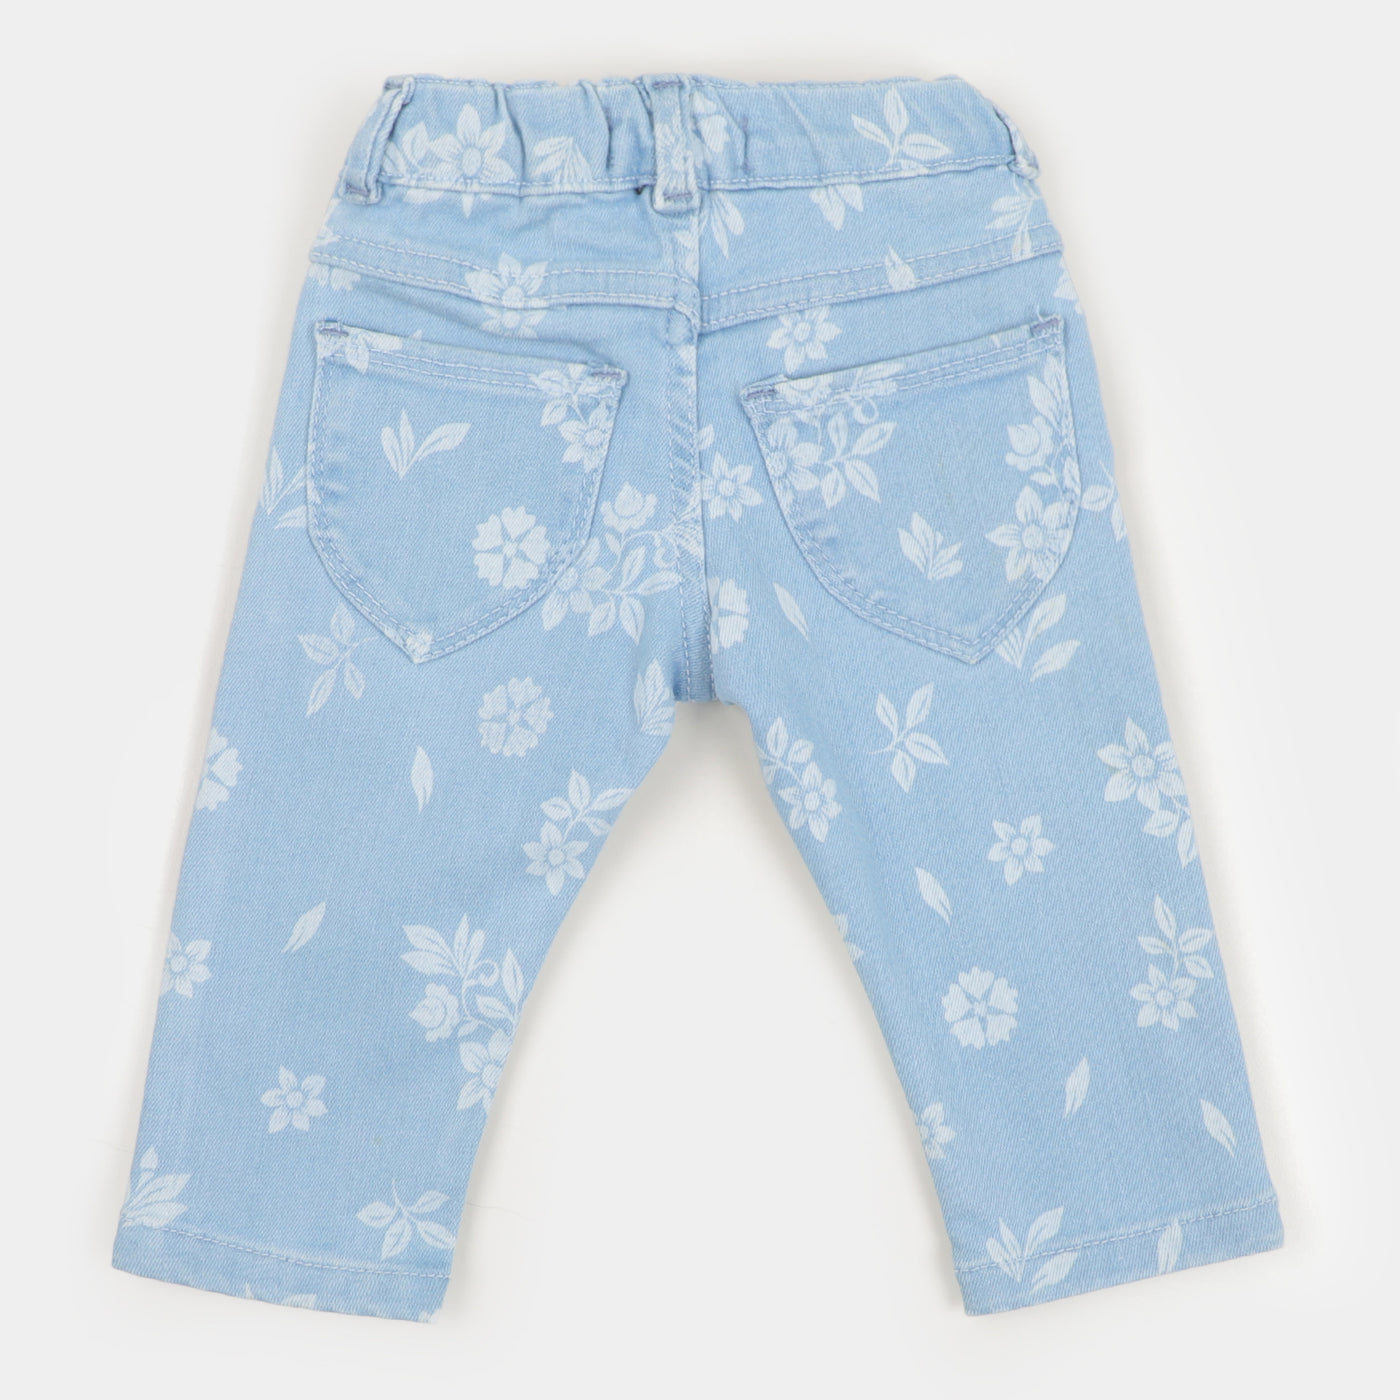 Infant Girls Pant Denim Floral - Ice Blue